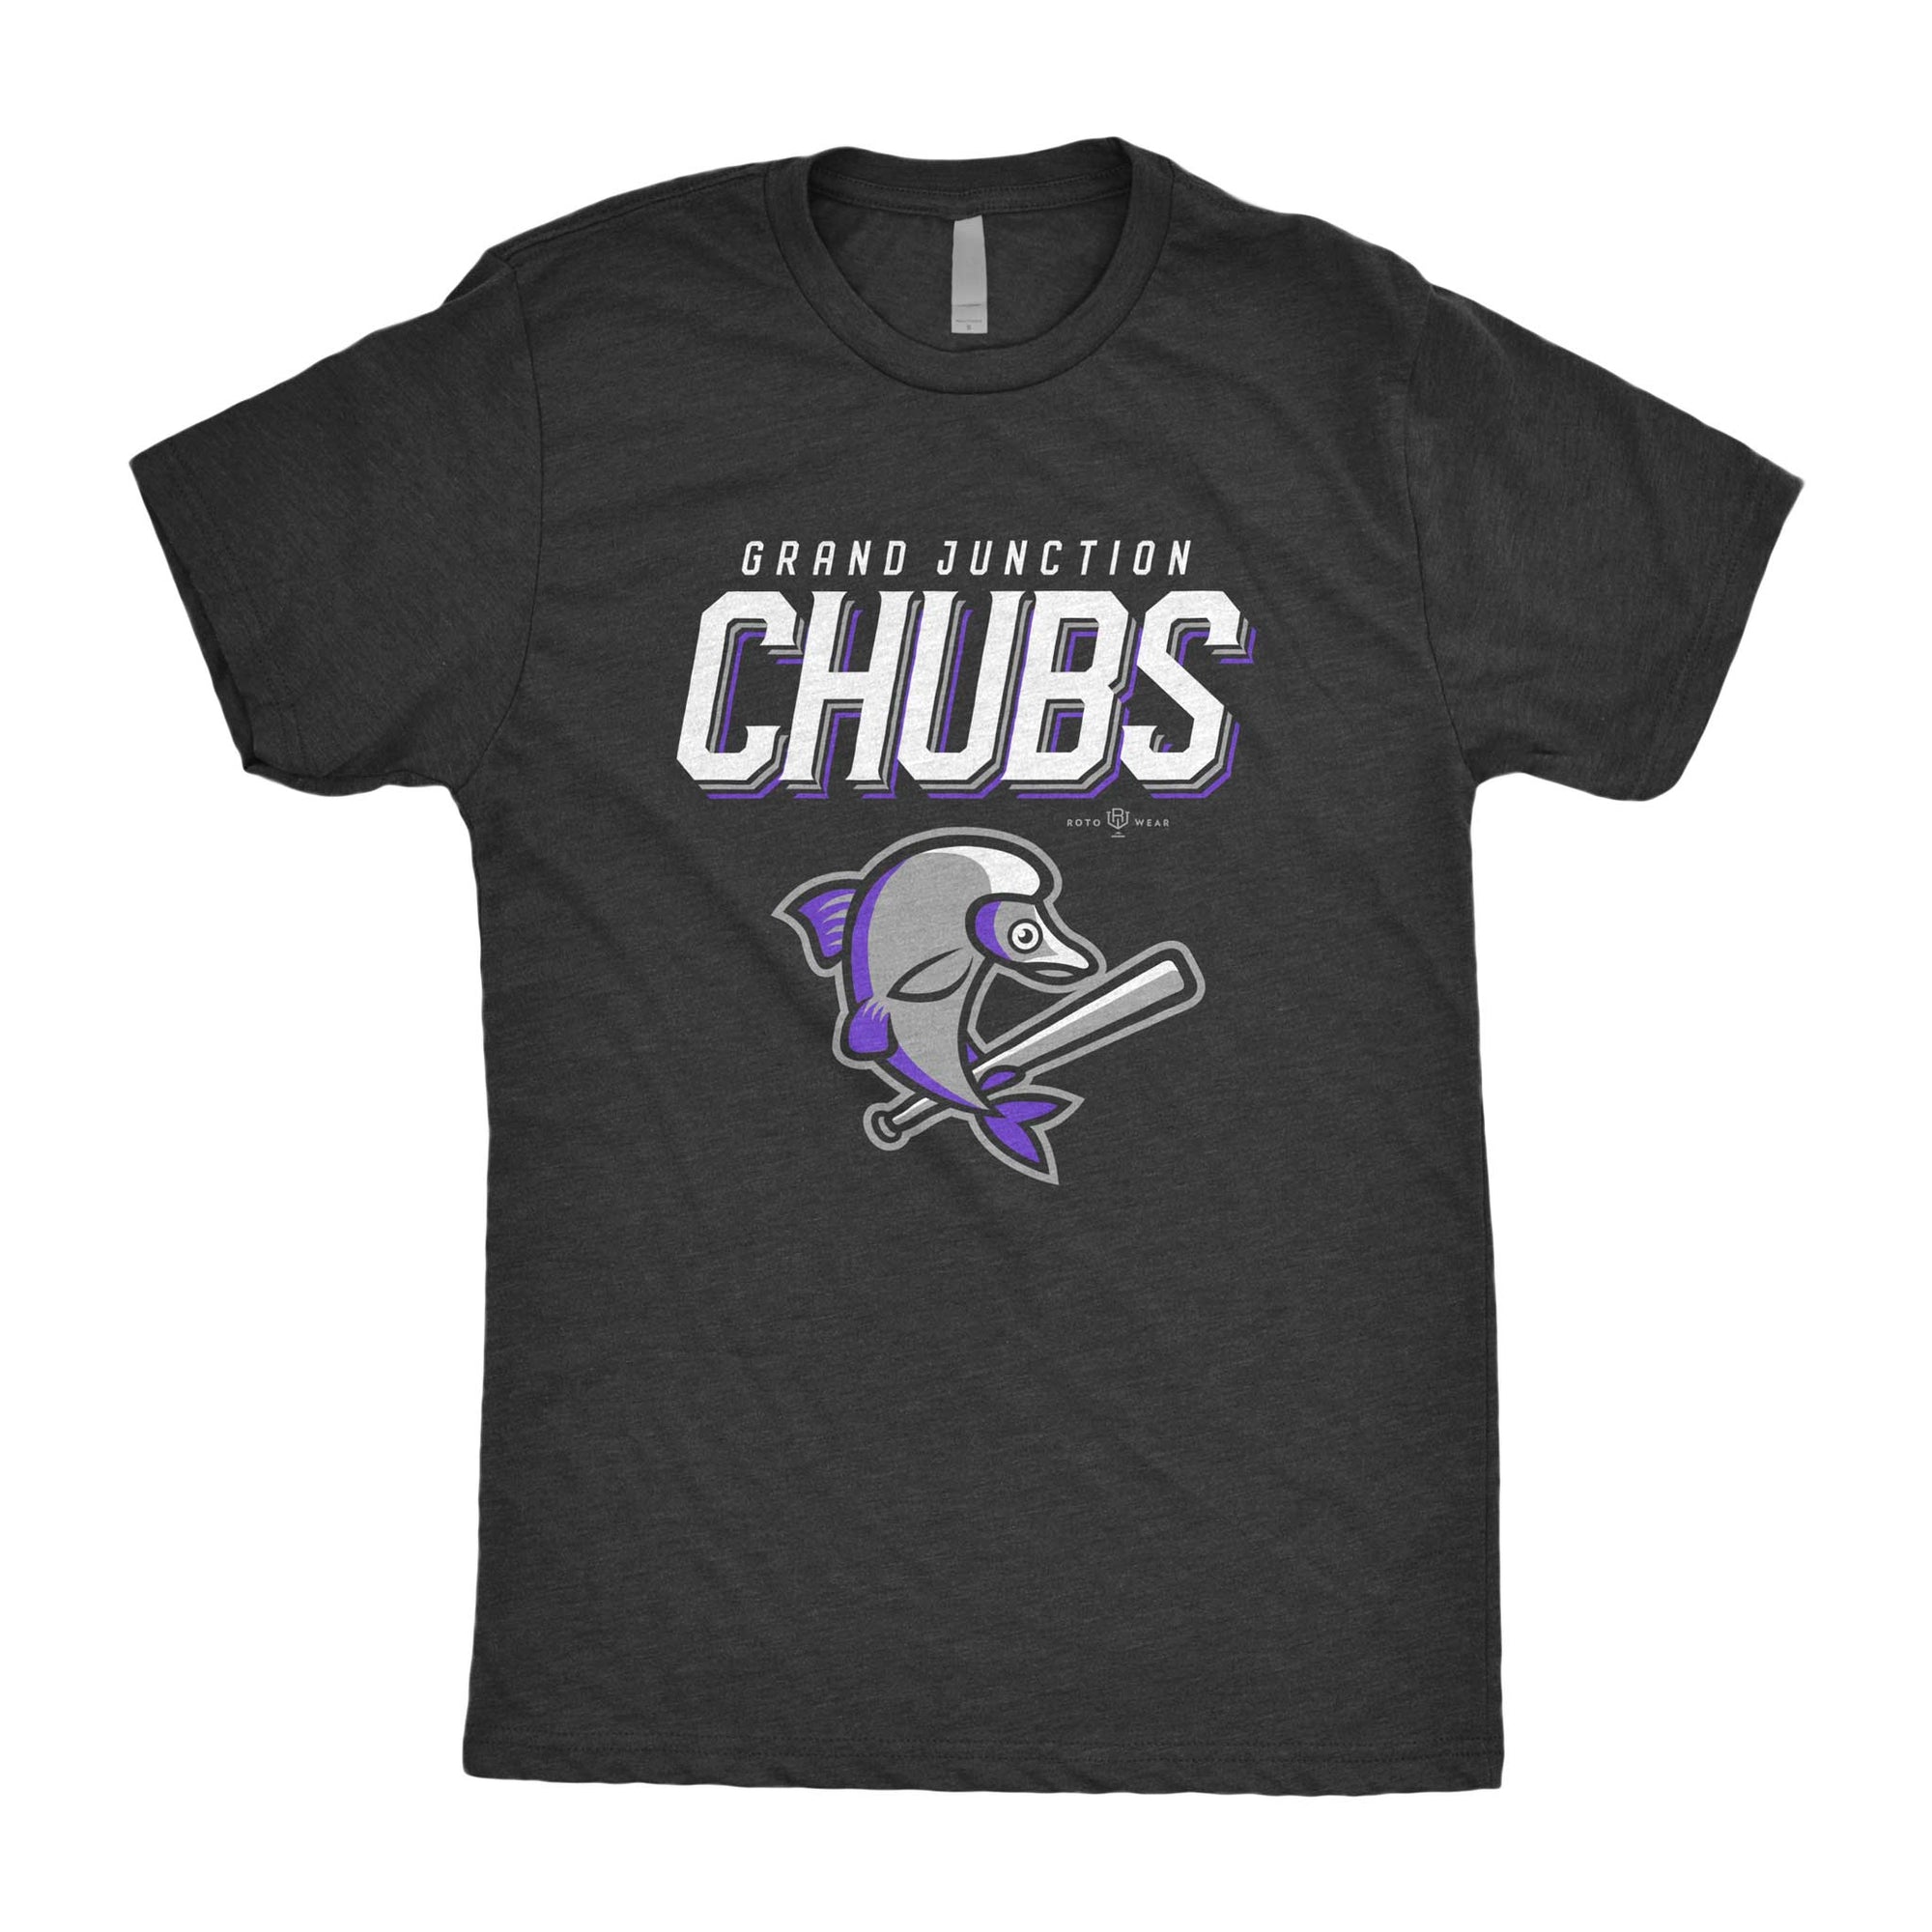 Grand Junction Chubs T-Shirt